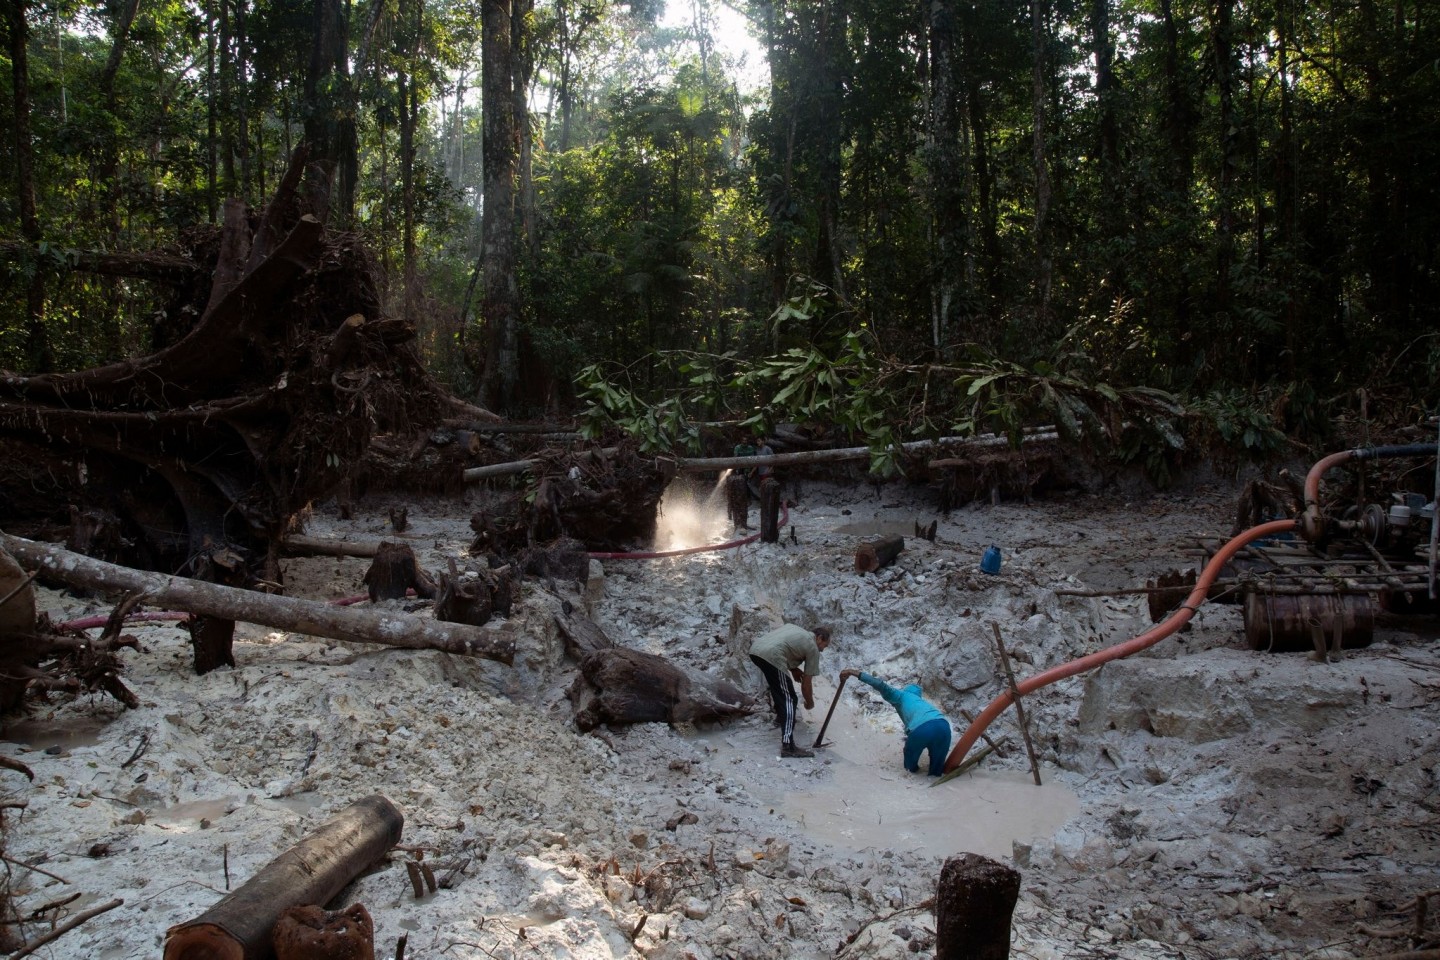 Einem Bericht zufolge zerstört der illegale Abbau von Gold zunehmend Indigenen-Gebiete im Norden Brasiliens.